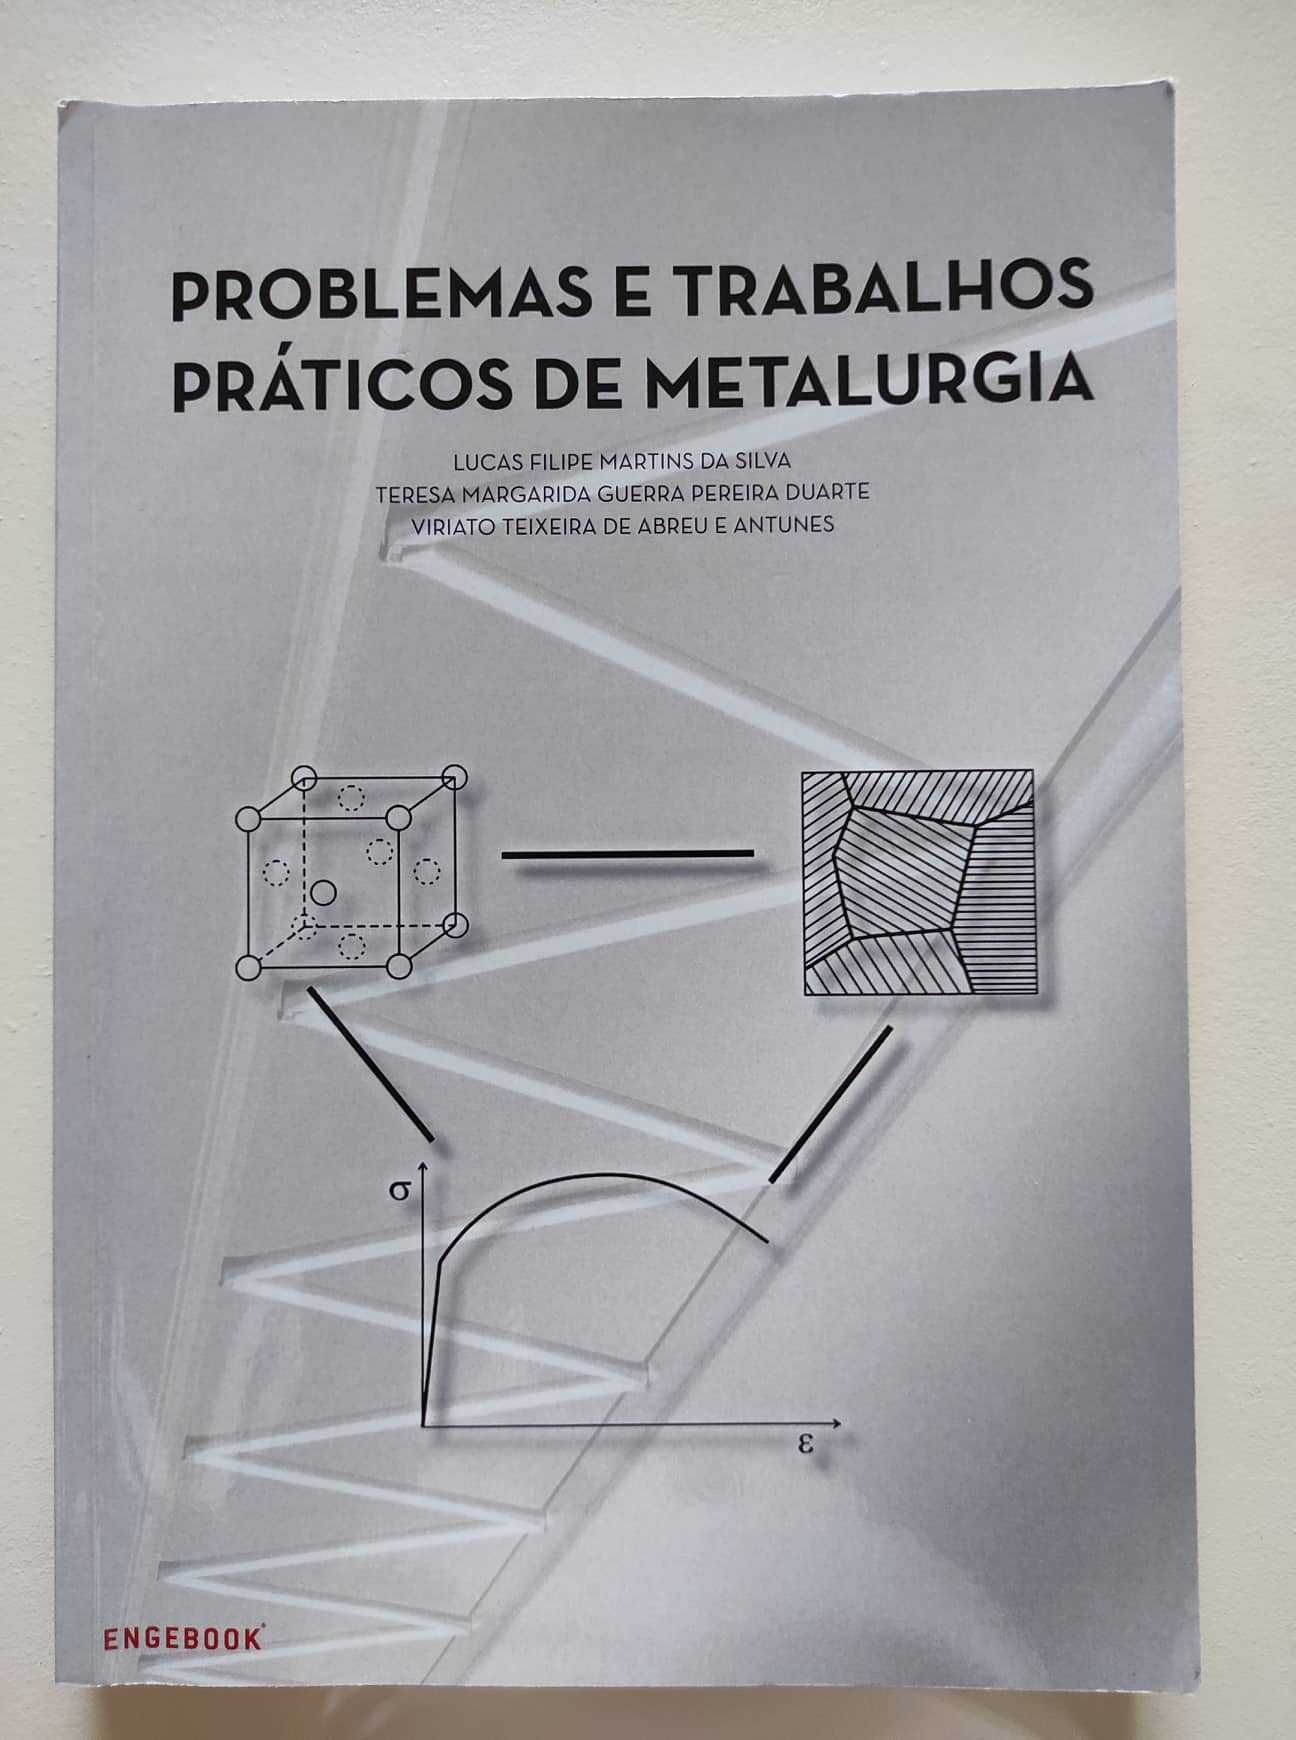 "Problemas e Trabalhos Práticos de Metalurgia"